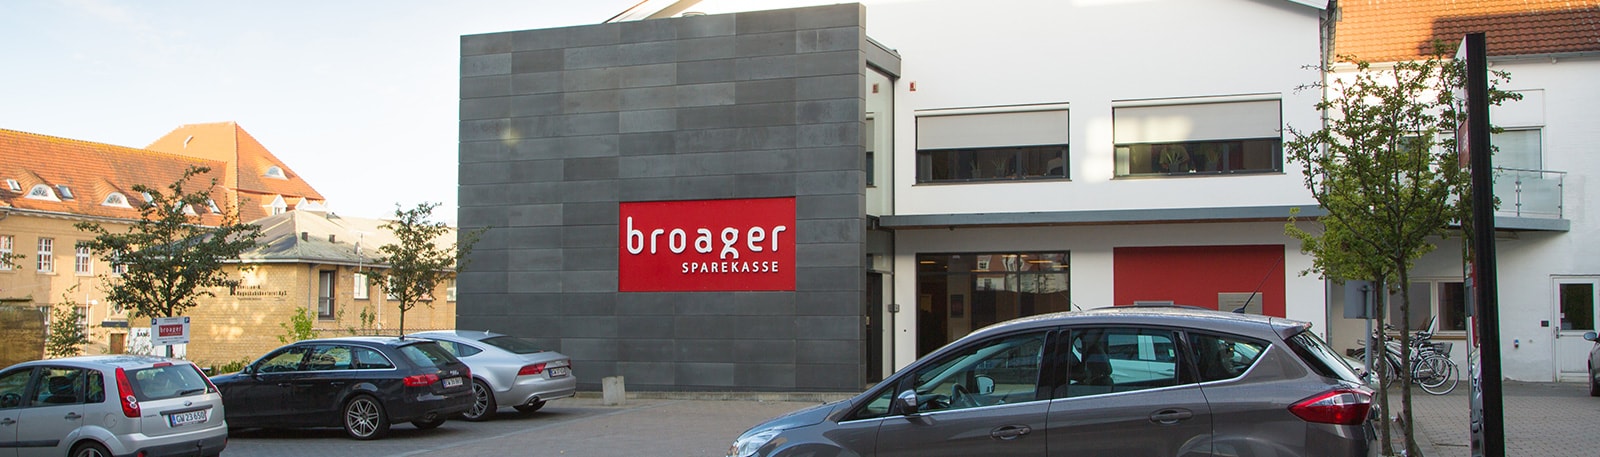 Broager Sparekasse Sønderborg filial